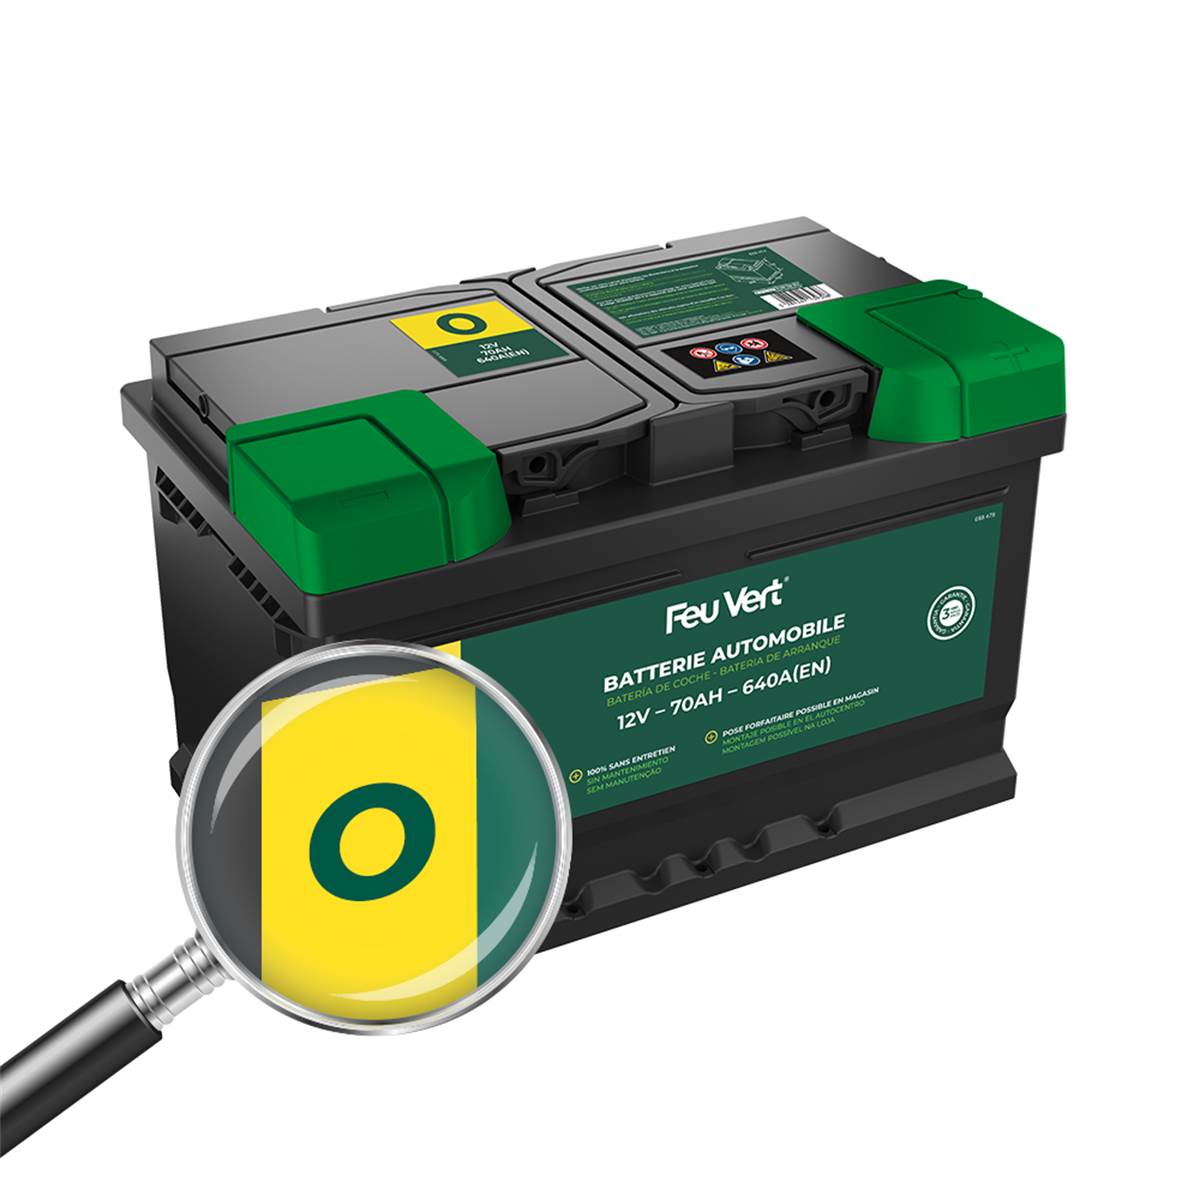 Batterie Voiture Feu Vert O - 70ah / 640a - 12v